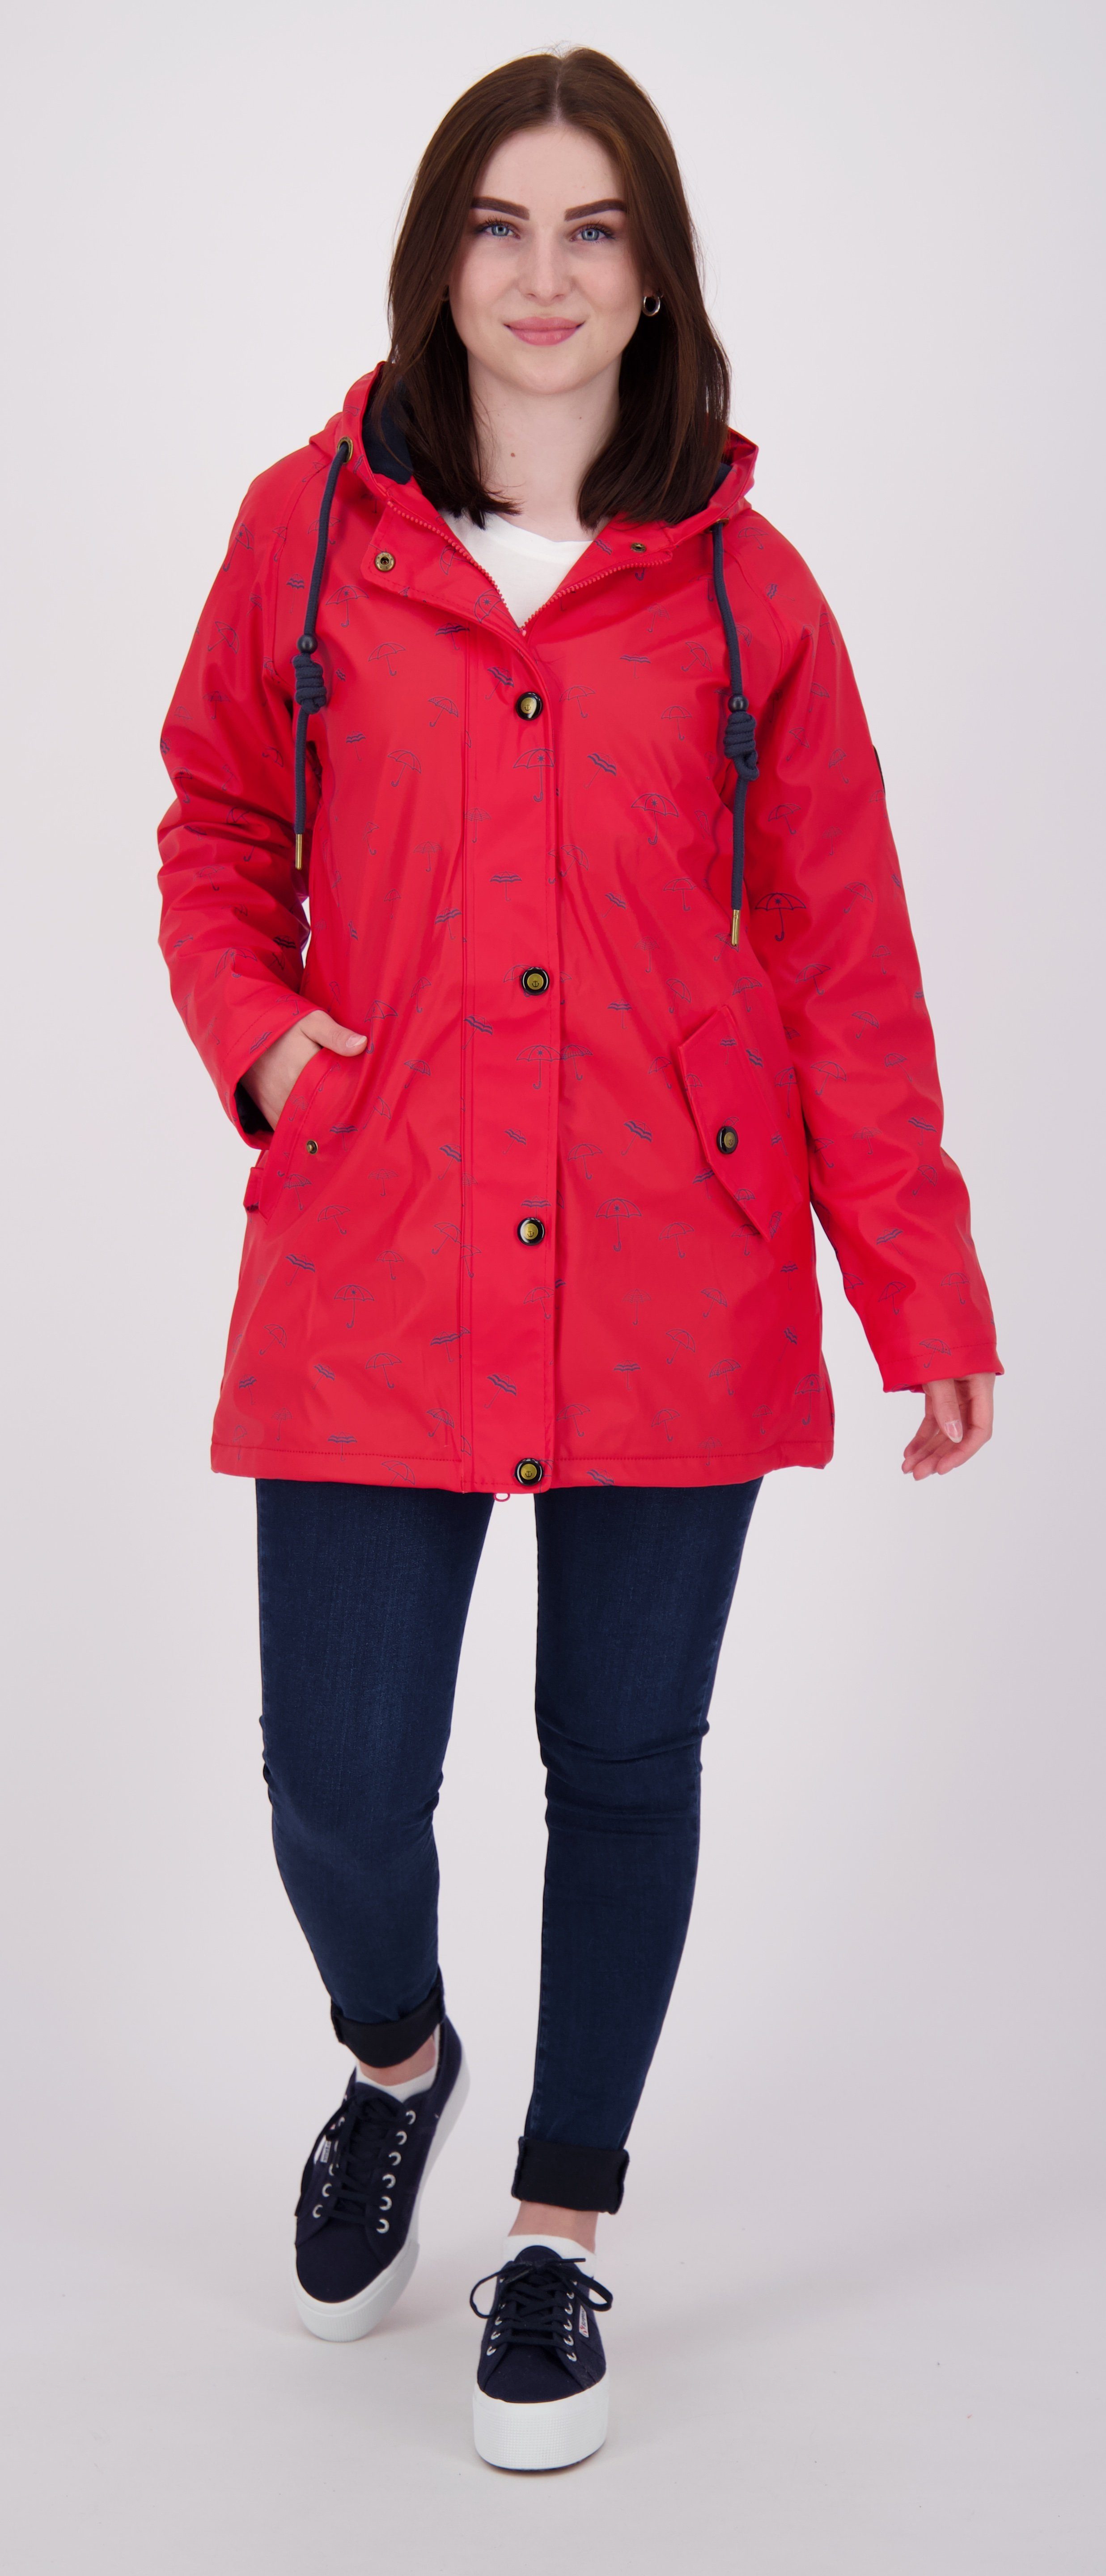 auch #ankerglutmeer DEPROC Regenjacke red in Größen Friesennerz Active erhältlich WOMEN CS Großen